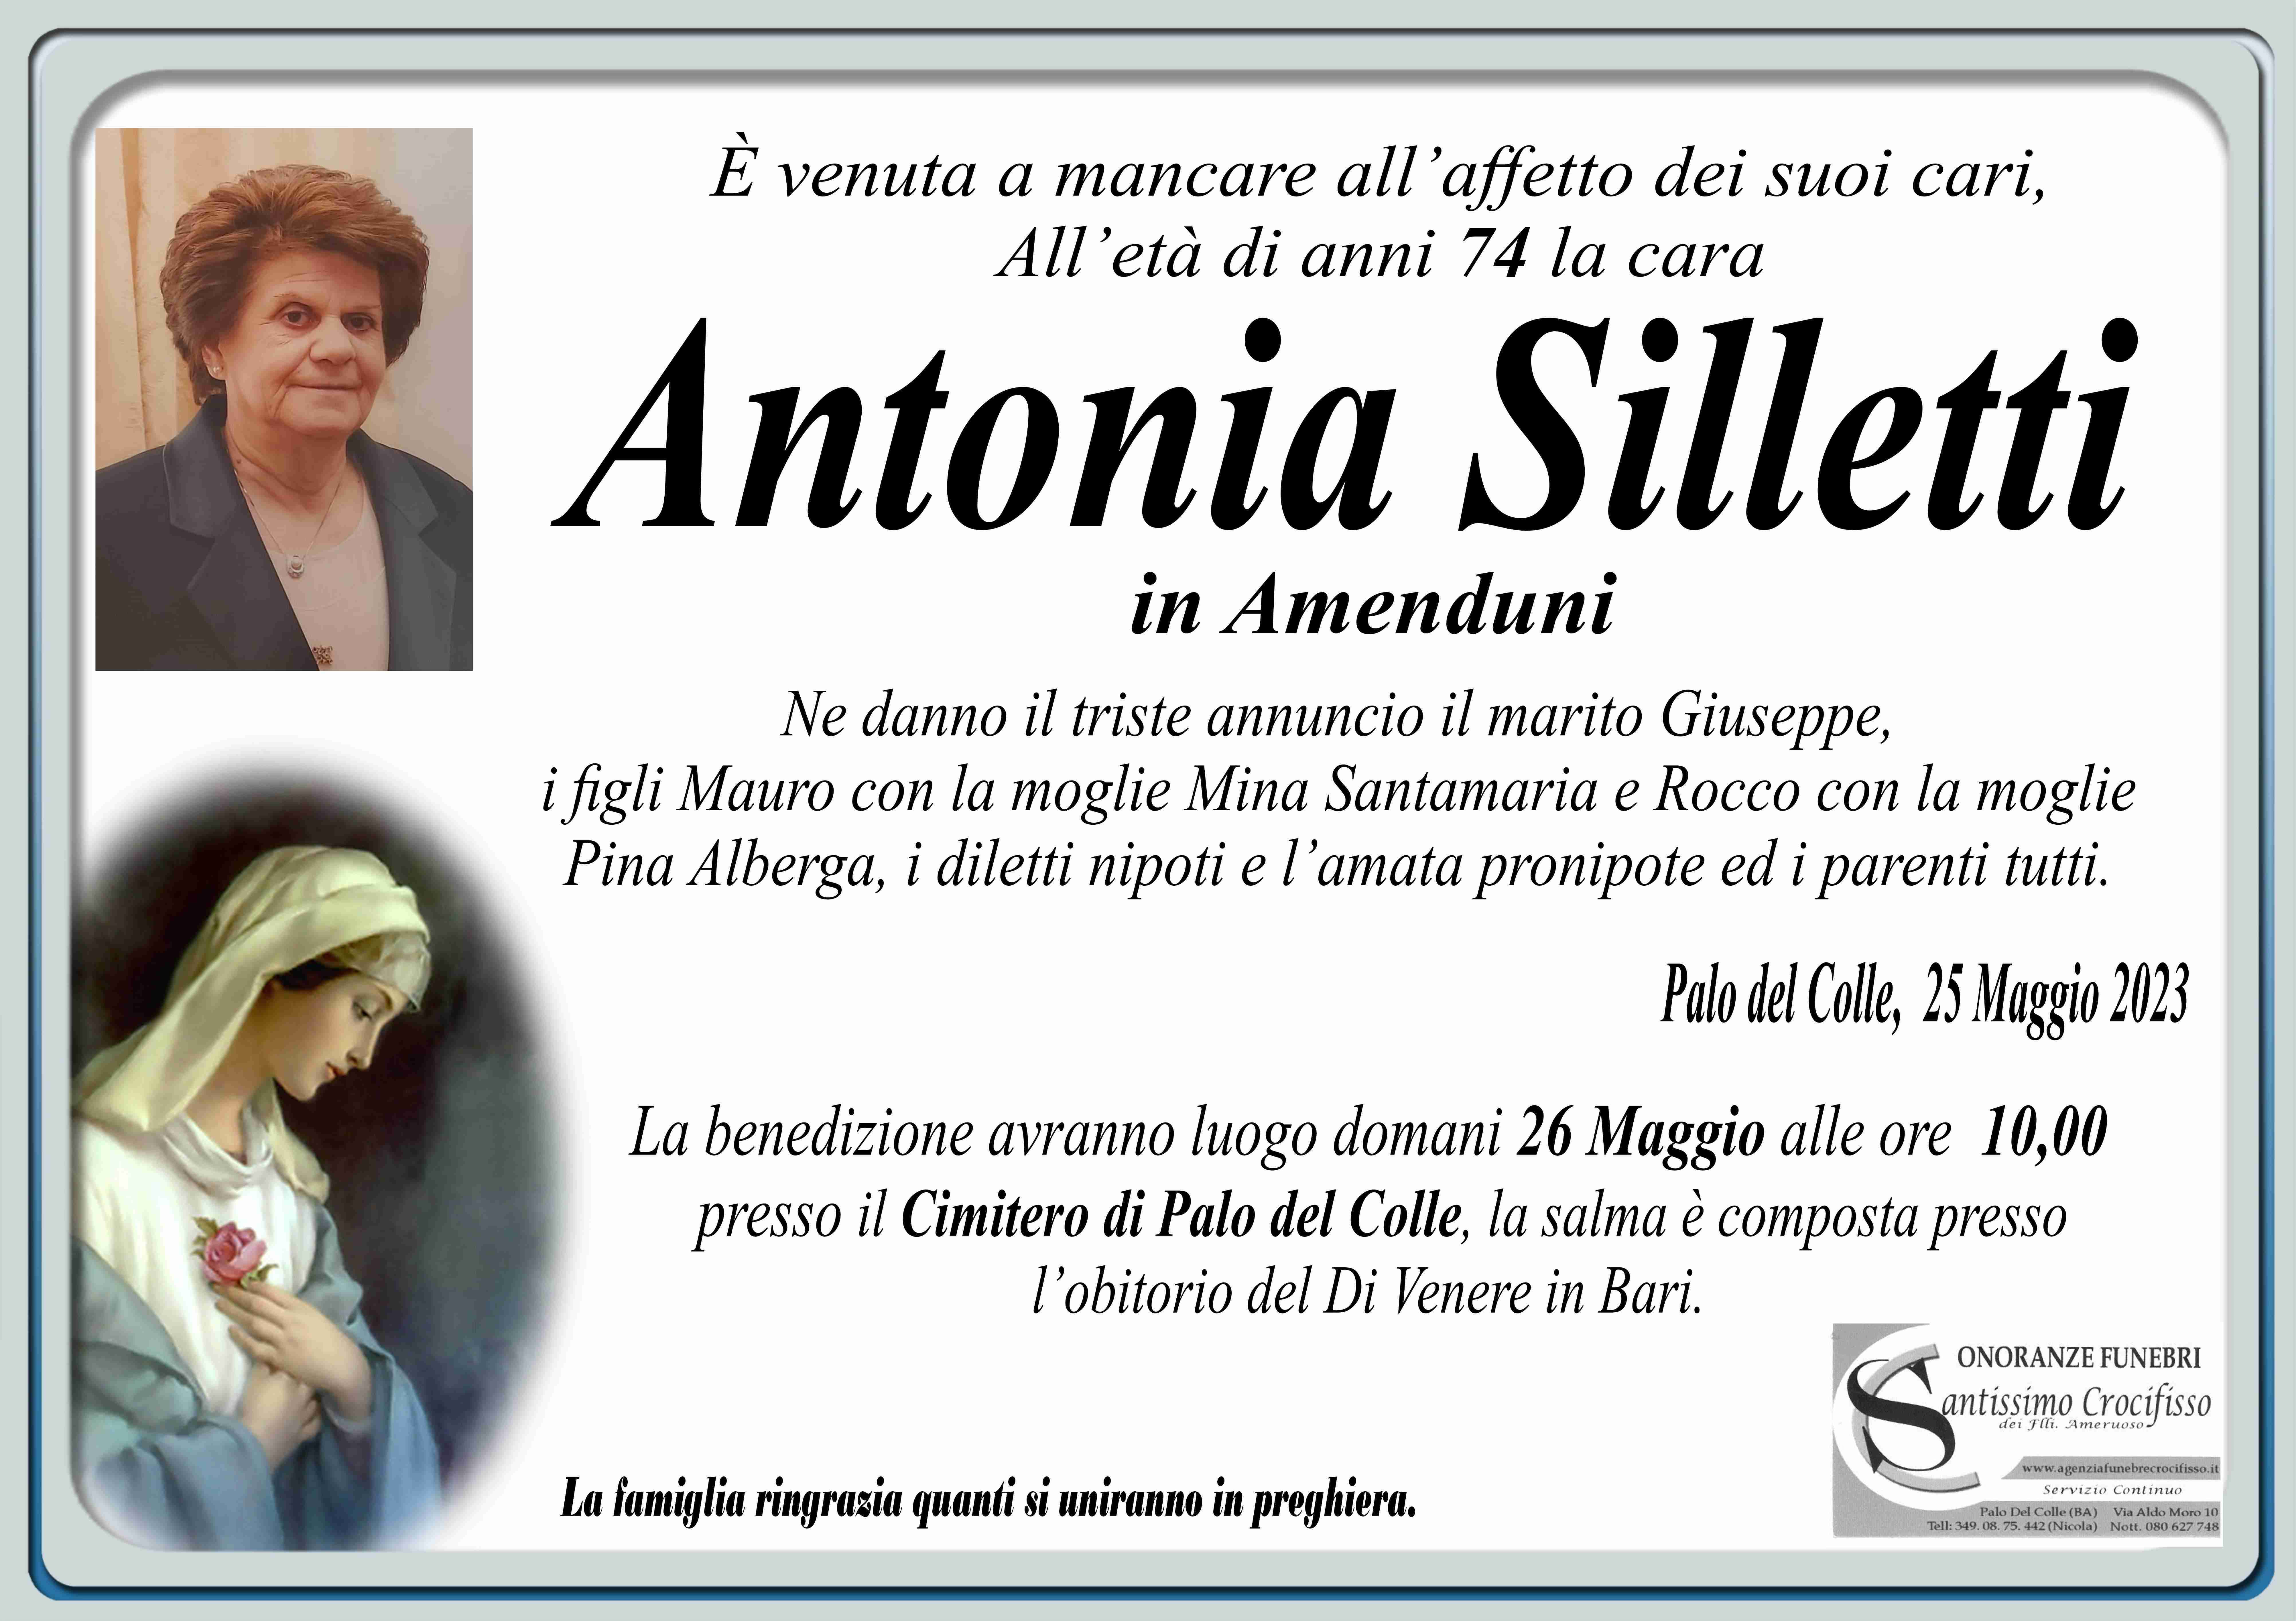 Antonia Silletti